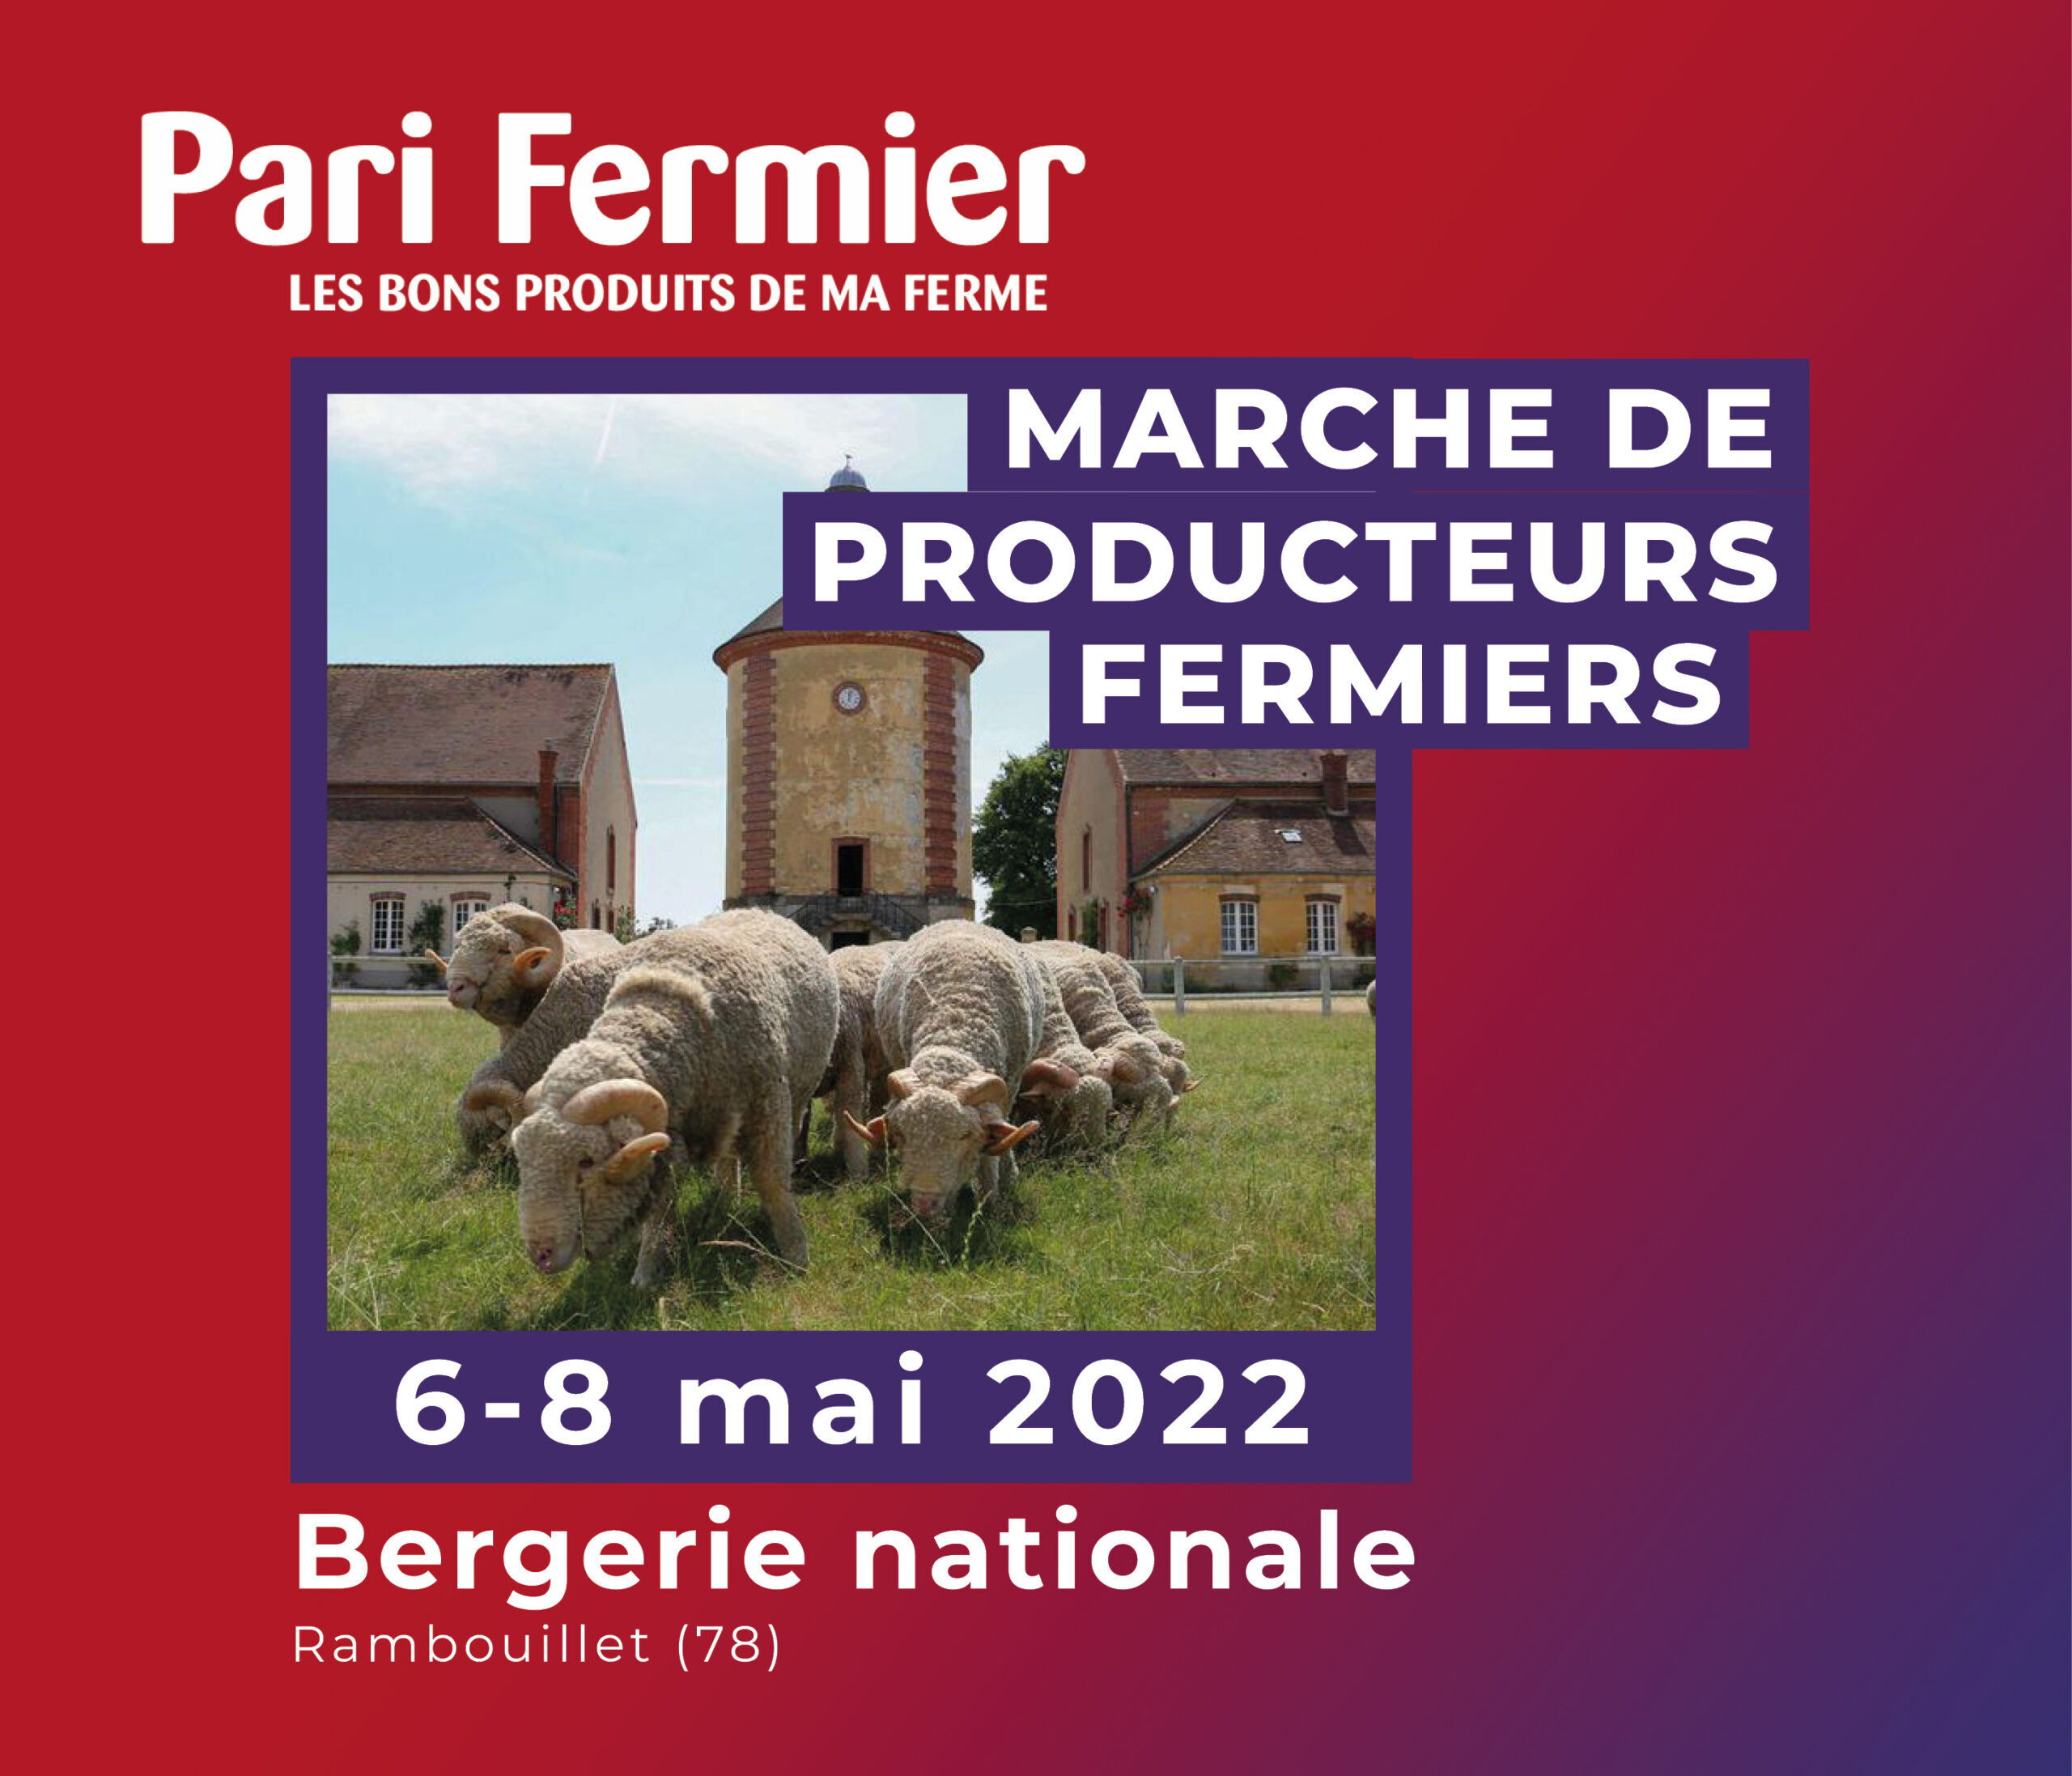 Pari fermier - bergerie nationale 2022